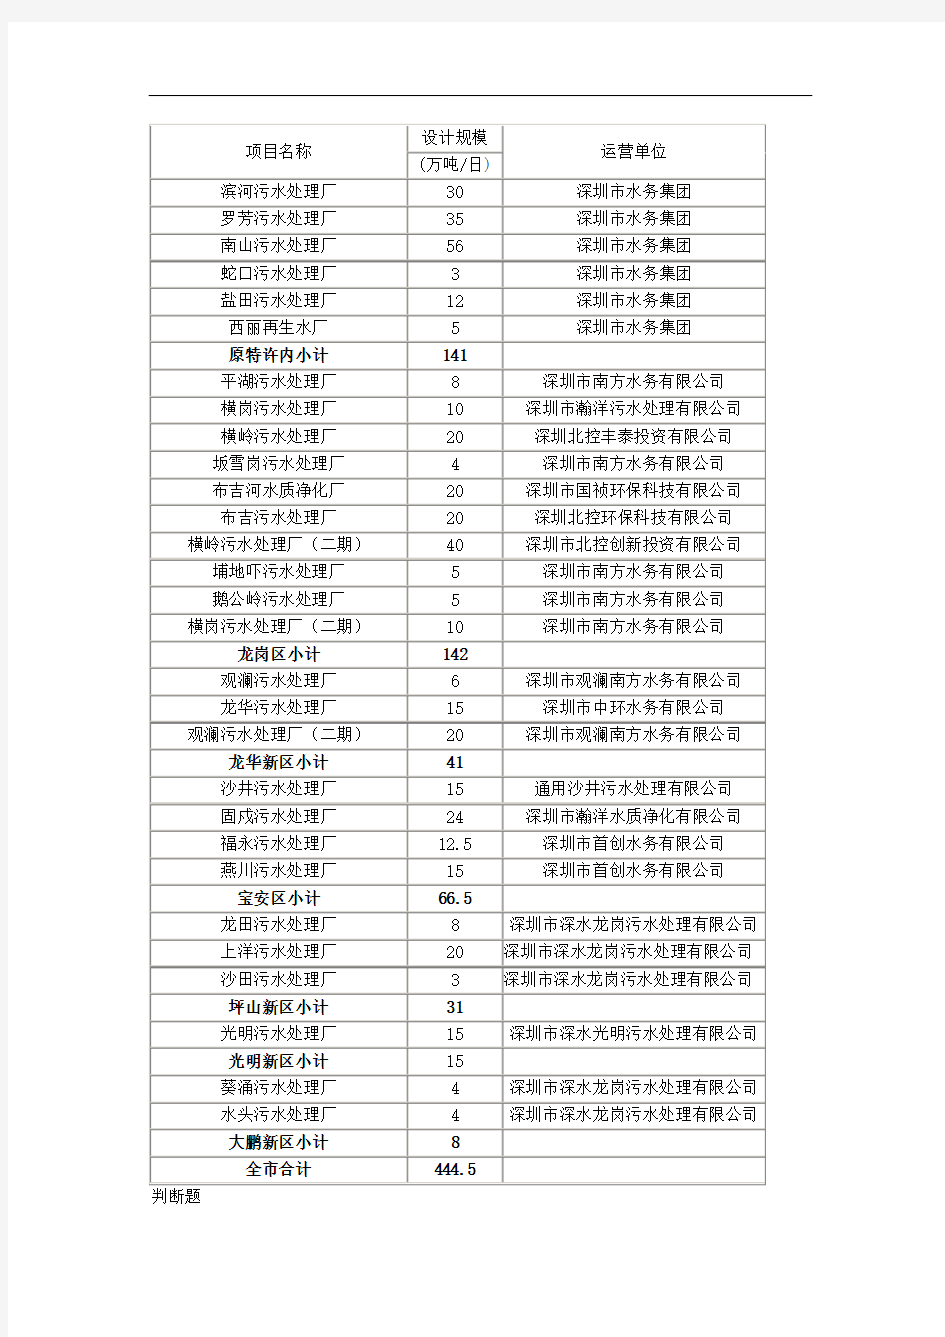 最新深圳市污水处理厂基本情况表